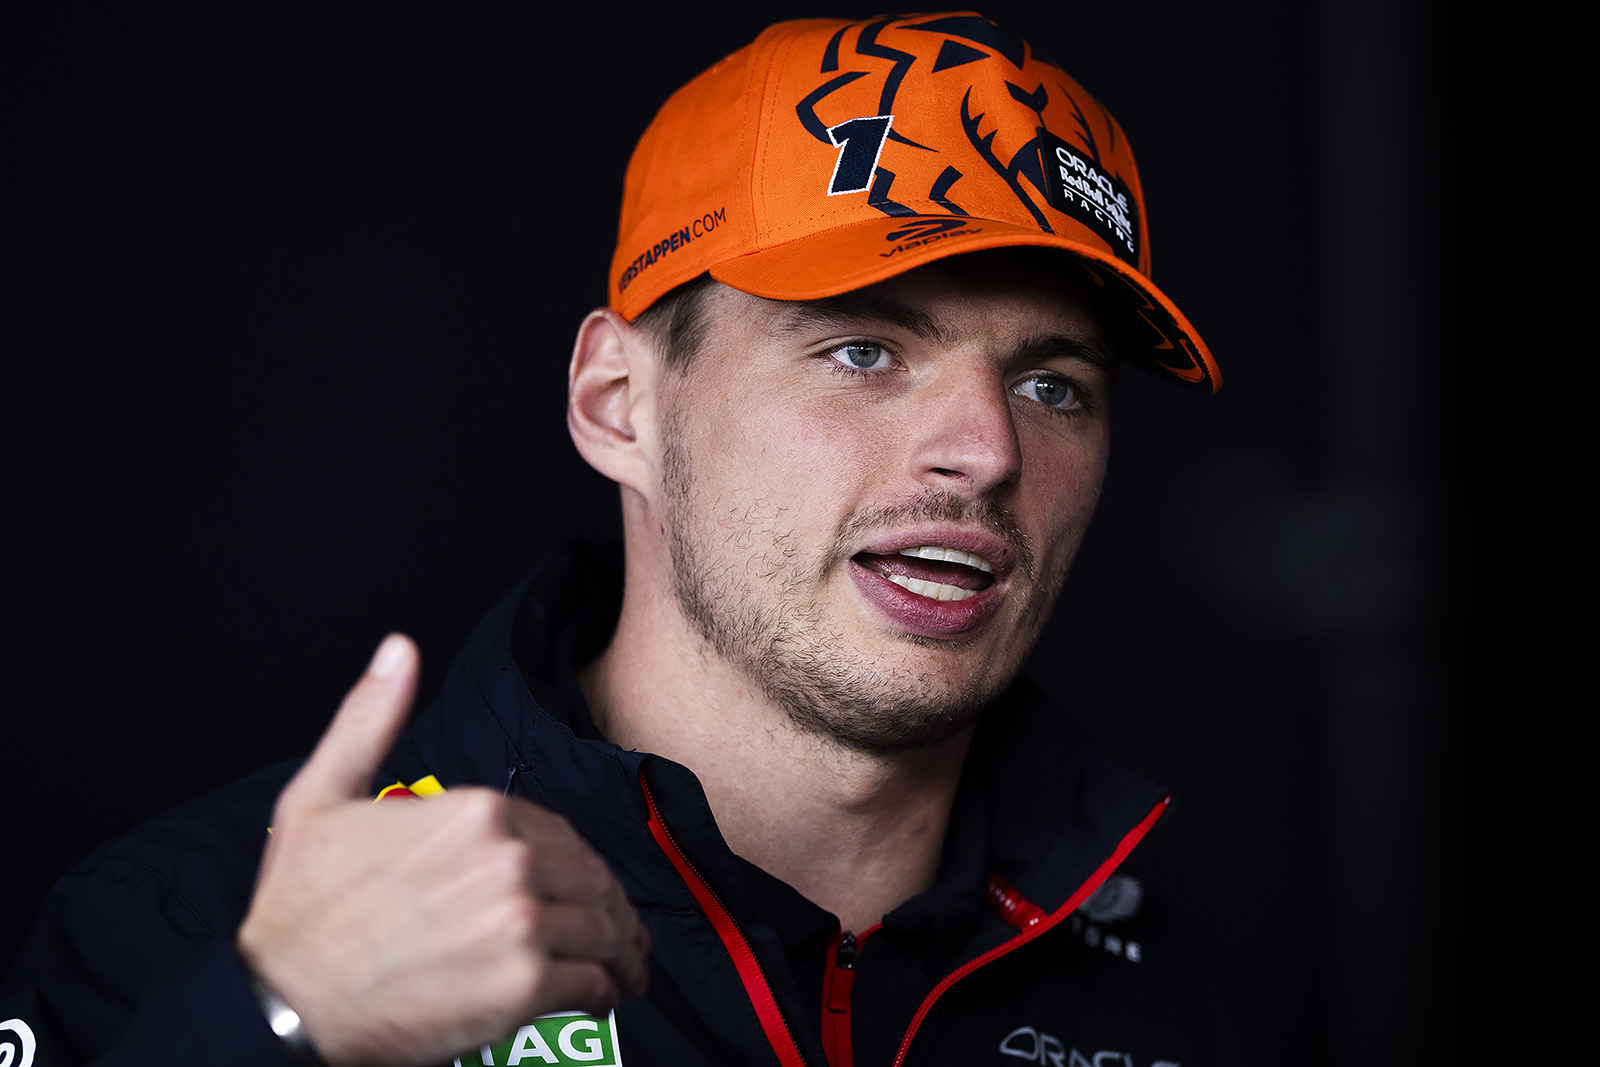 Carreras de F1, Max Verstappen y Sprint: “Puedes hacer lo que quieras, pero no creo que sea interesante”